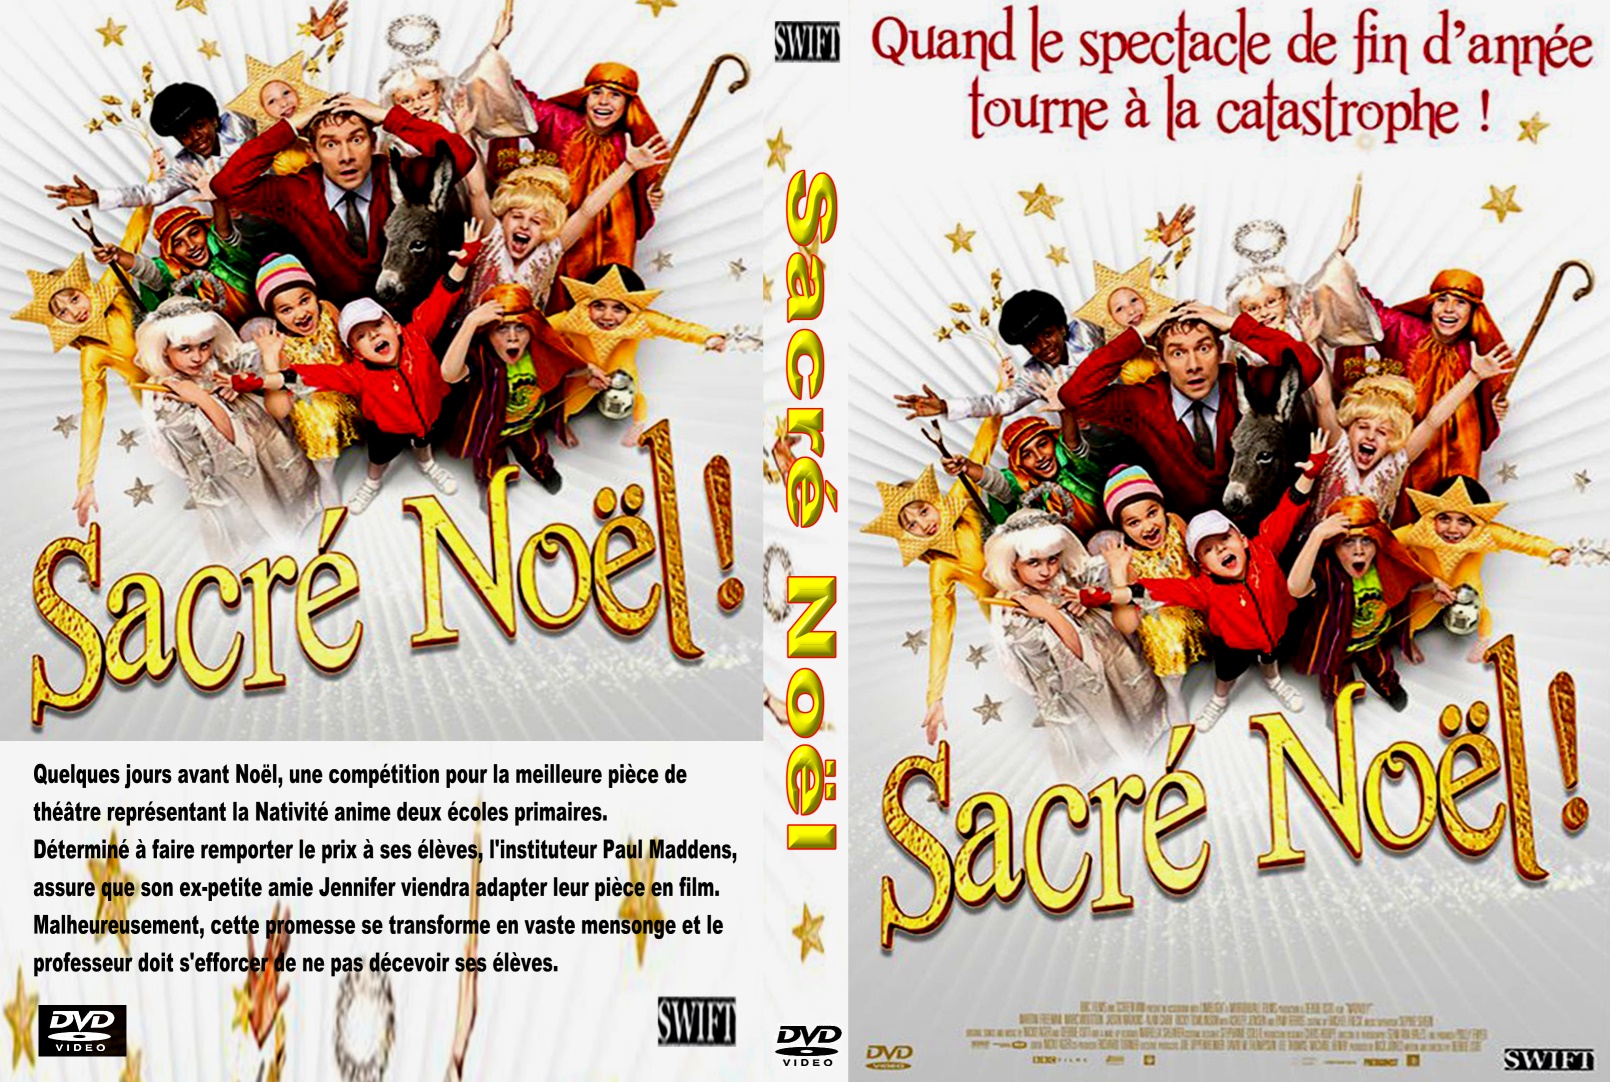 Jaquette DVD Sacr Noel custom